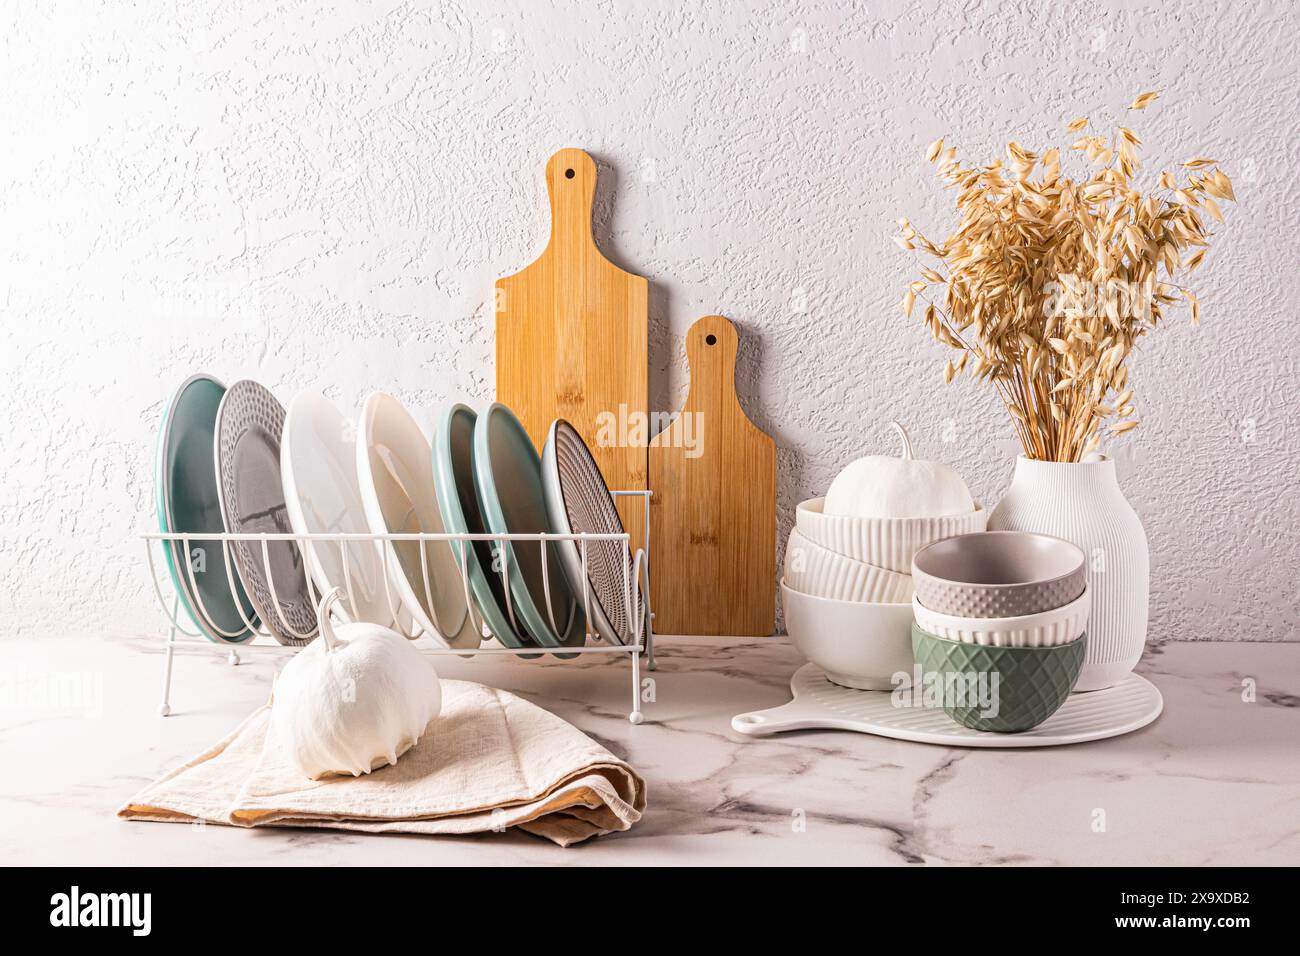 Ein Satz Keramikschalen, Teller in einem Tellertrockner, dekorative Kürbisse auf der Küchenarbeitsplatte. Das Innere einer stilvollen Küche. Vorderansicht Stockfoto